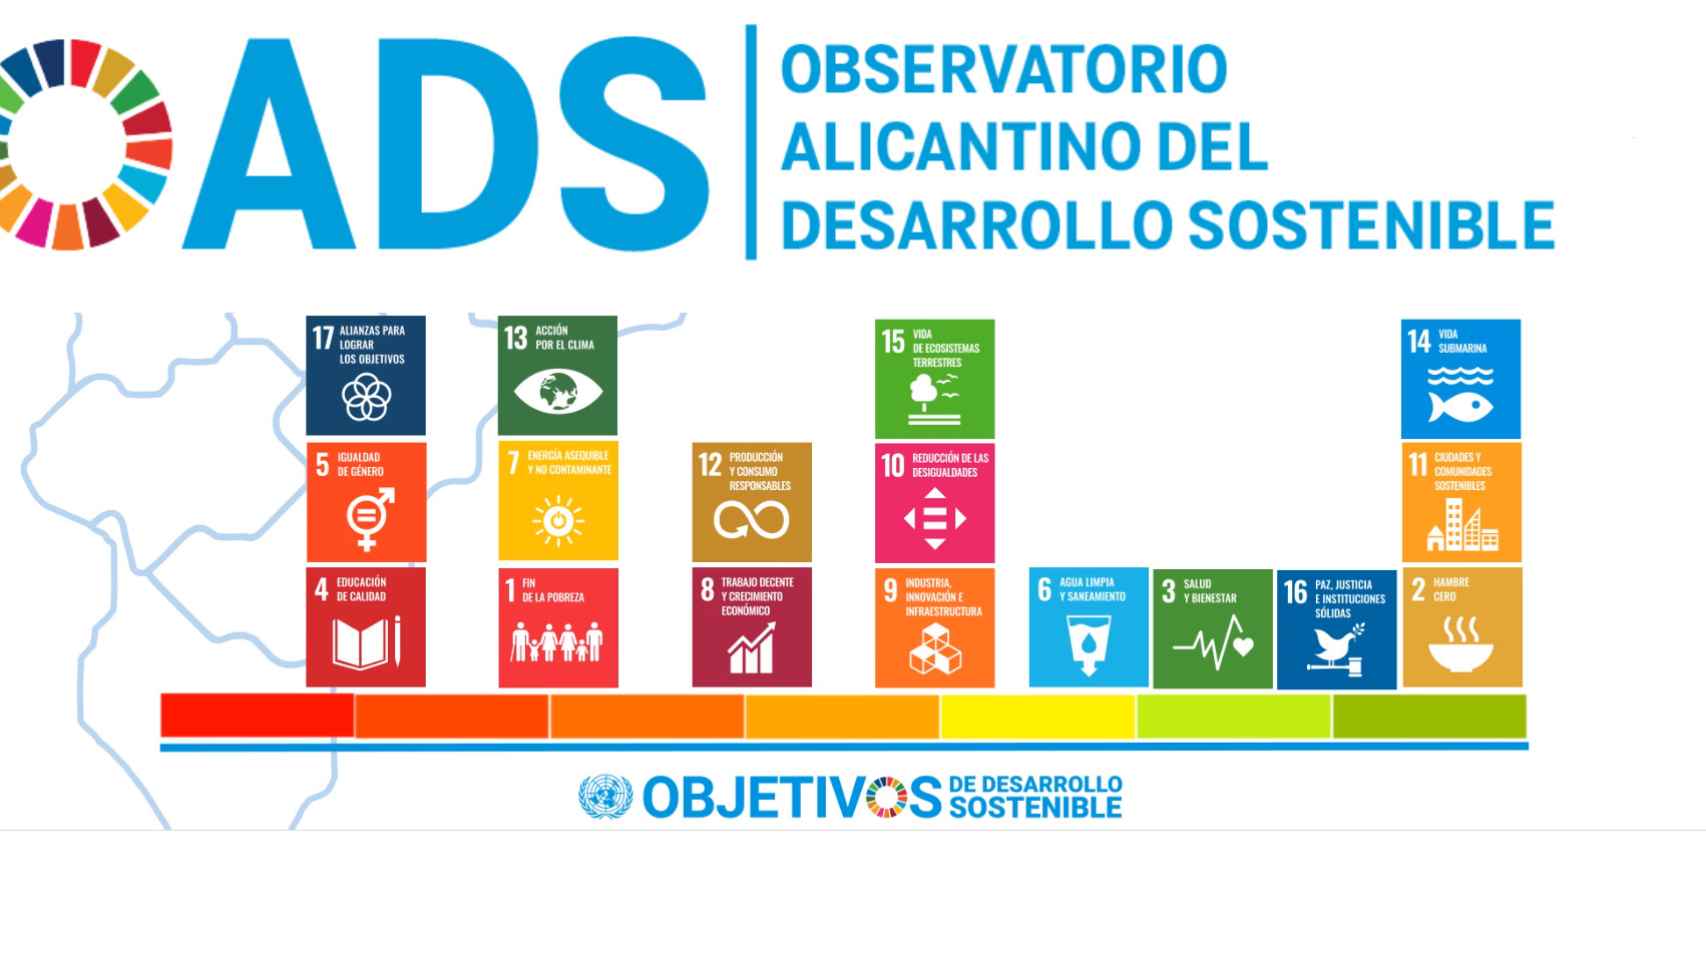 Gráfico del Observatorio de cumplimiento de ODS en la provincia de CENID.